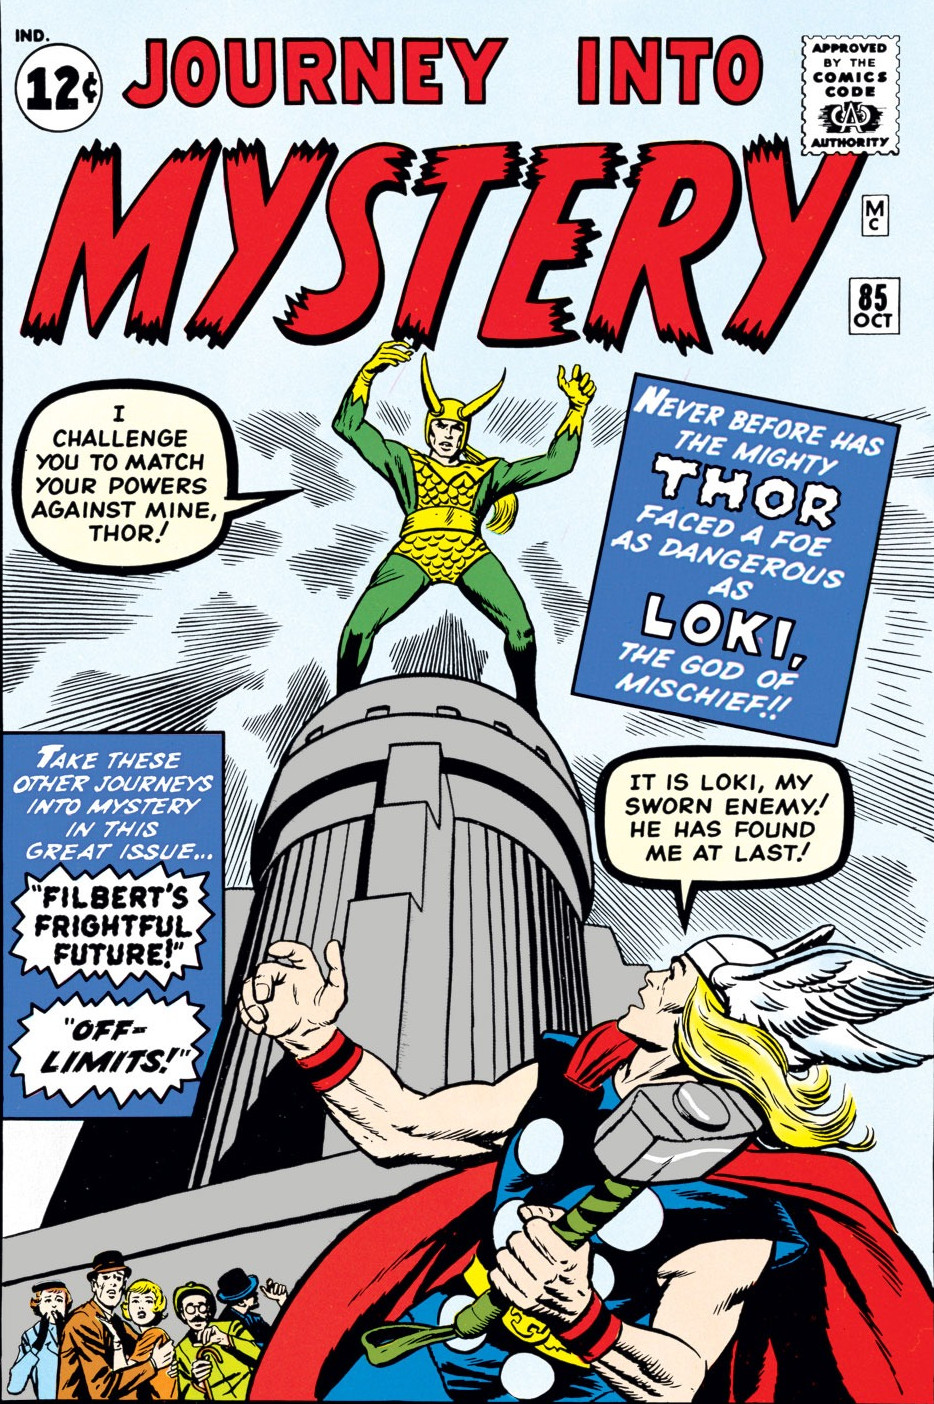 Галерея Эволюция Локи в комиксах Marvel — бог обмана, король, Мститель, кандидат в президенты США - 3 фото